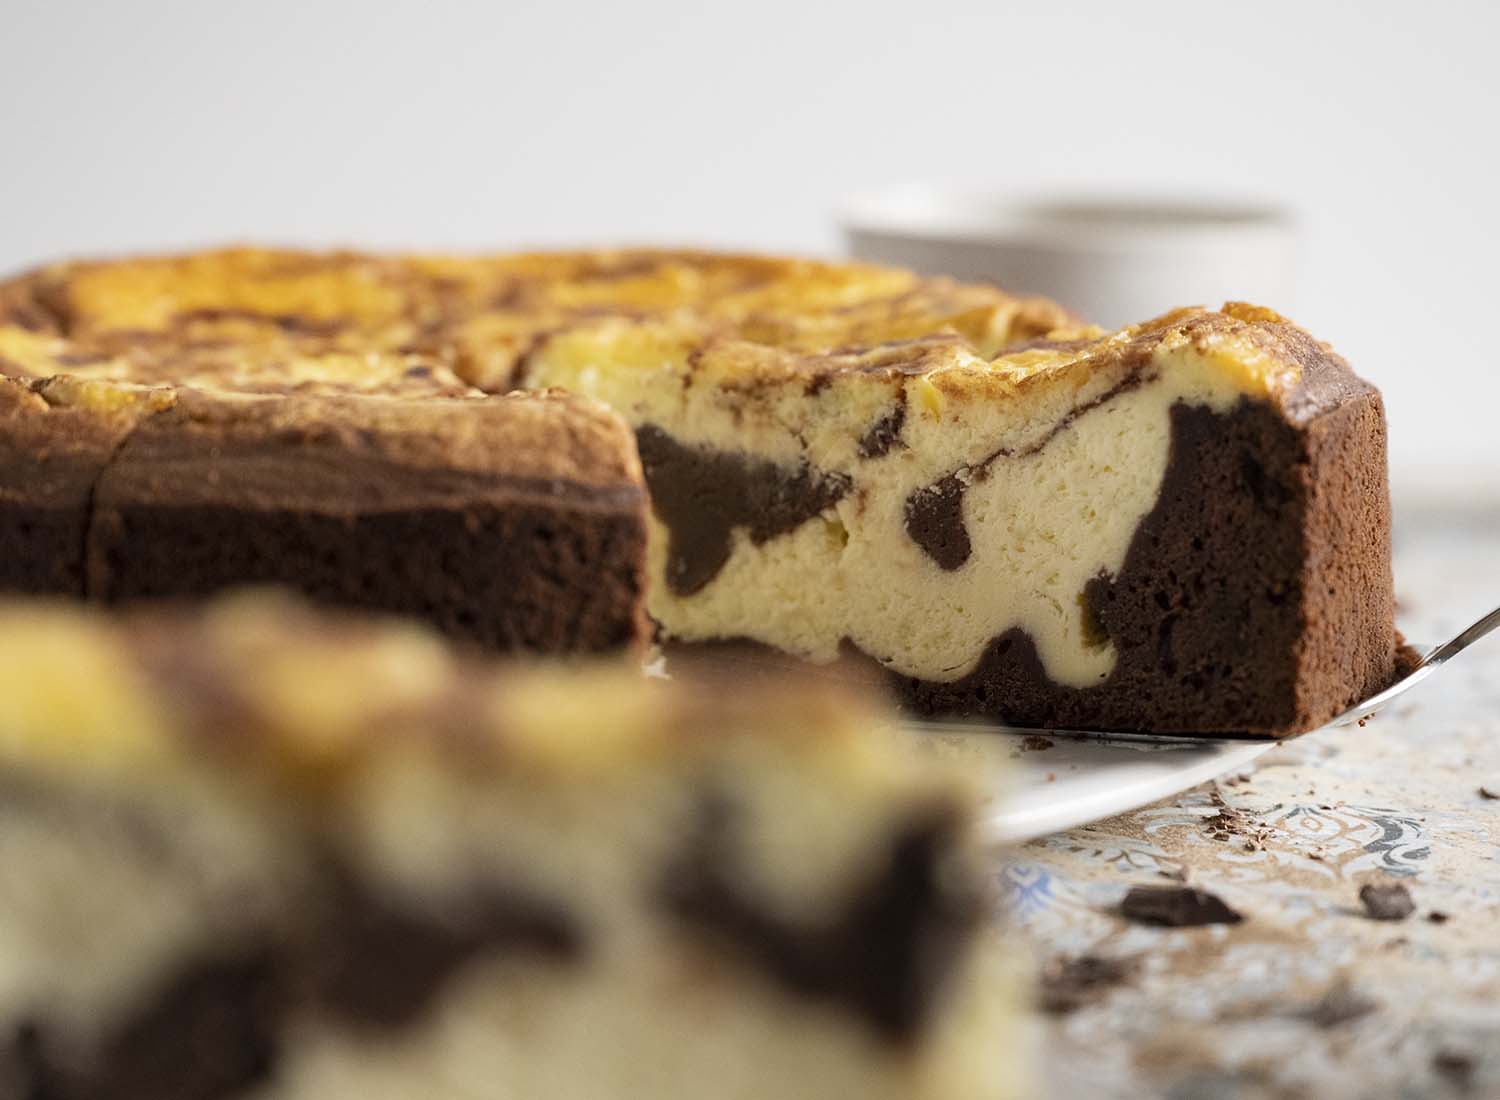 Ein Tortenheber steckt unter einem Stück Schokoladenkuchen mit Cheesecakefüllung. Gleich heben wir das Stück Kuchen auf einn Teller, Im Vordergrund ist ein zweites Stück Kuchen zu sehen, das bereits auf einem Teller steht. Dieses Bild ist aufgenommen im Querformat.